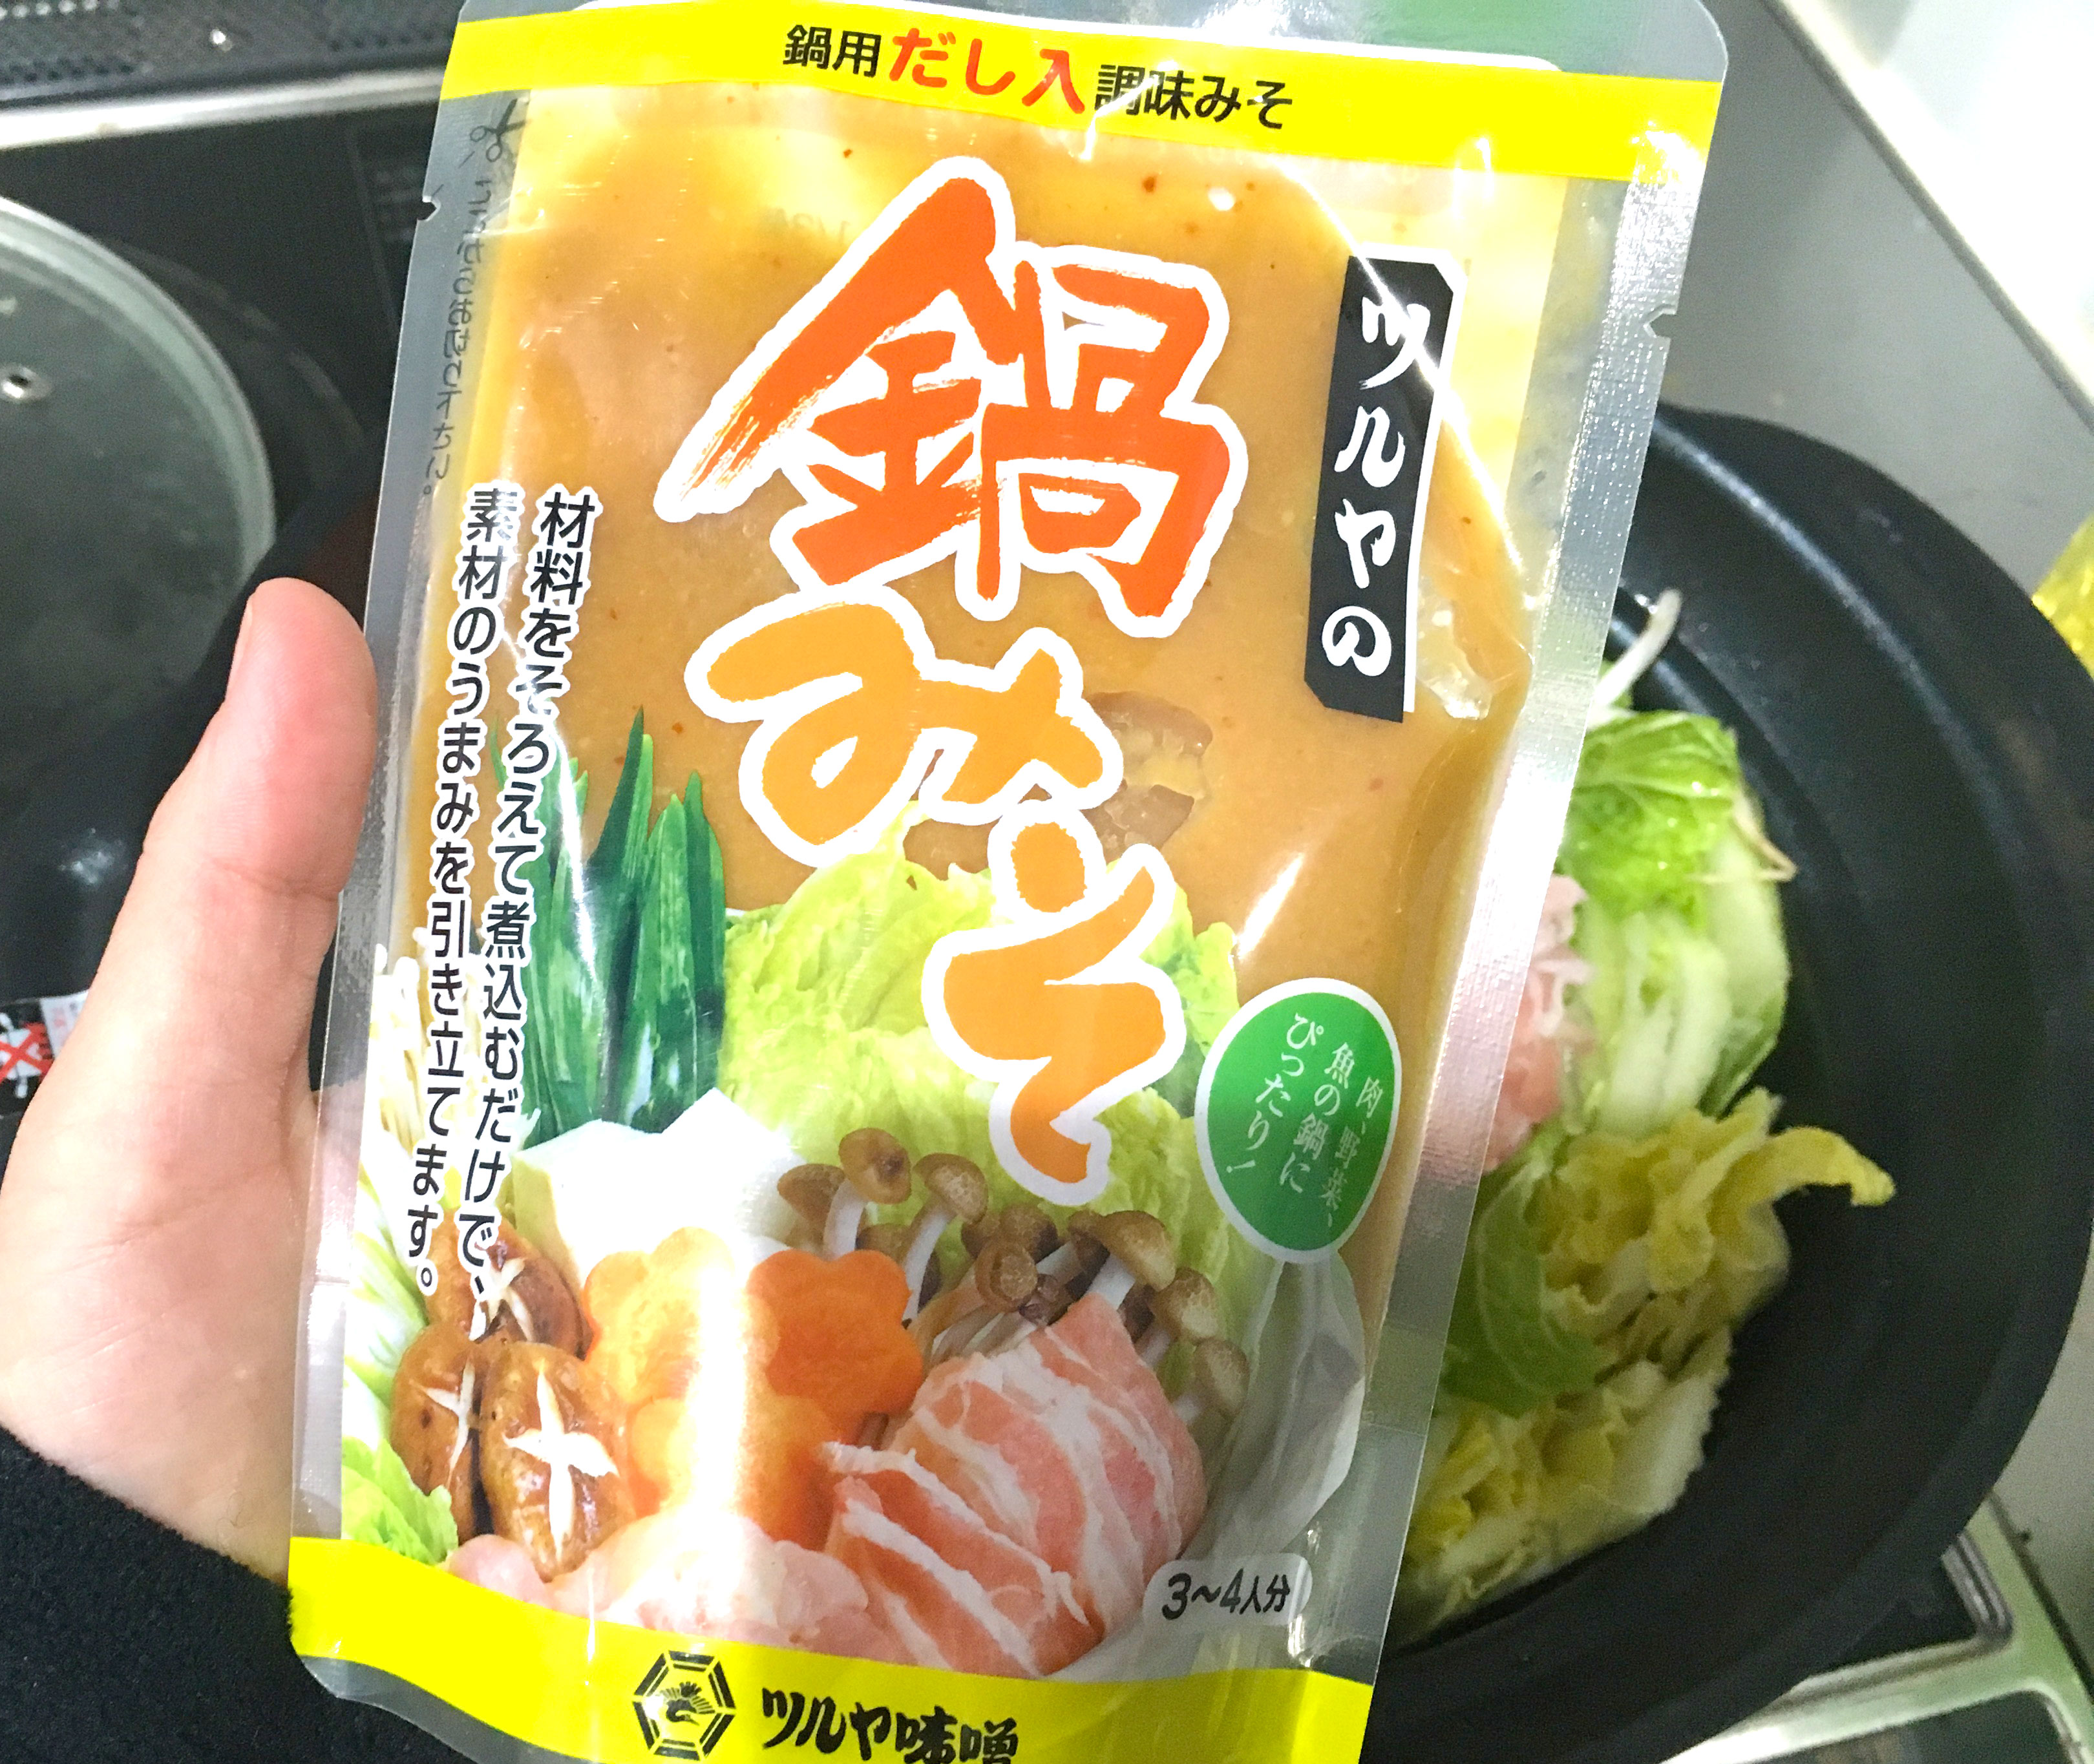 石川県民 とり野菜みそ で喜ぶのは素人 話は ツルヤの鍋みそ を食べてからだ というので食べてみた これは美味 類似品とスルーしてたら損やでコレ ロケットニュース24